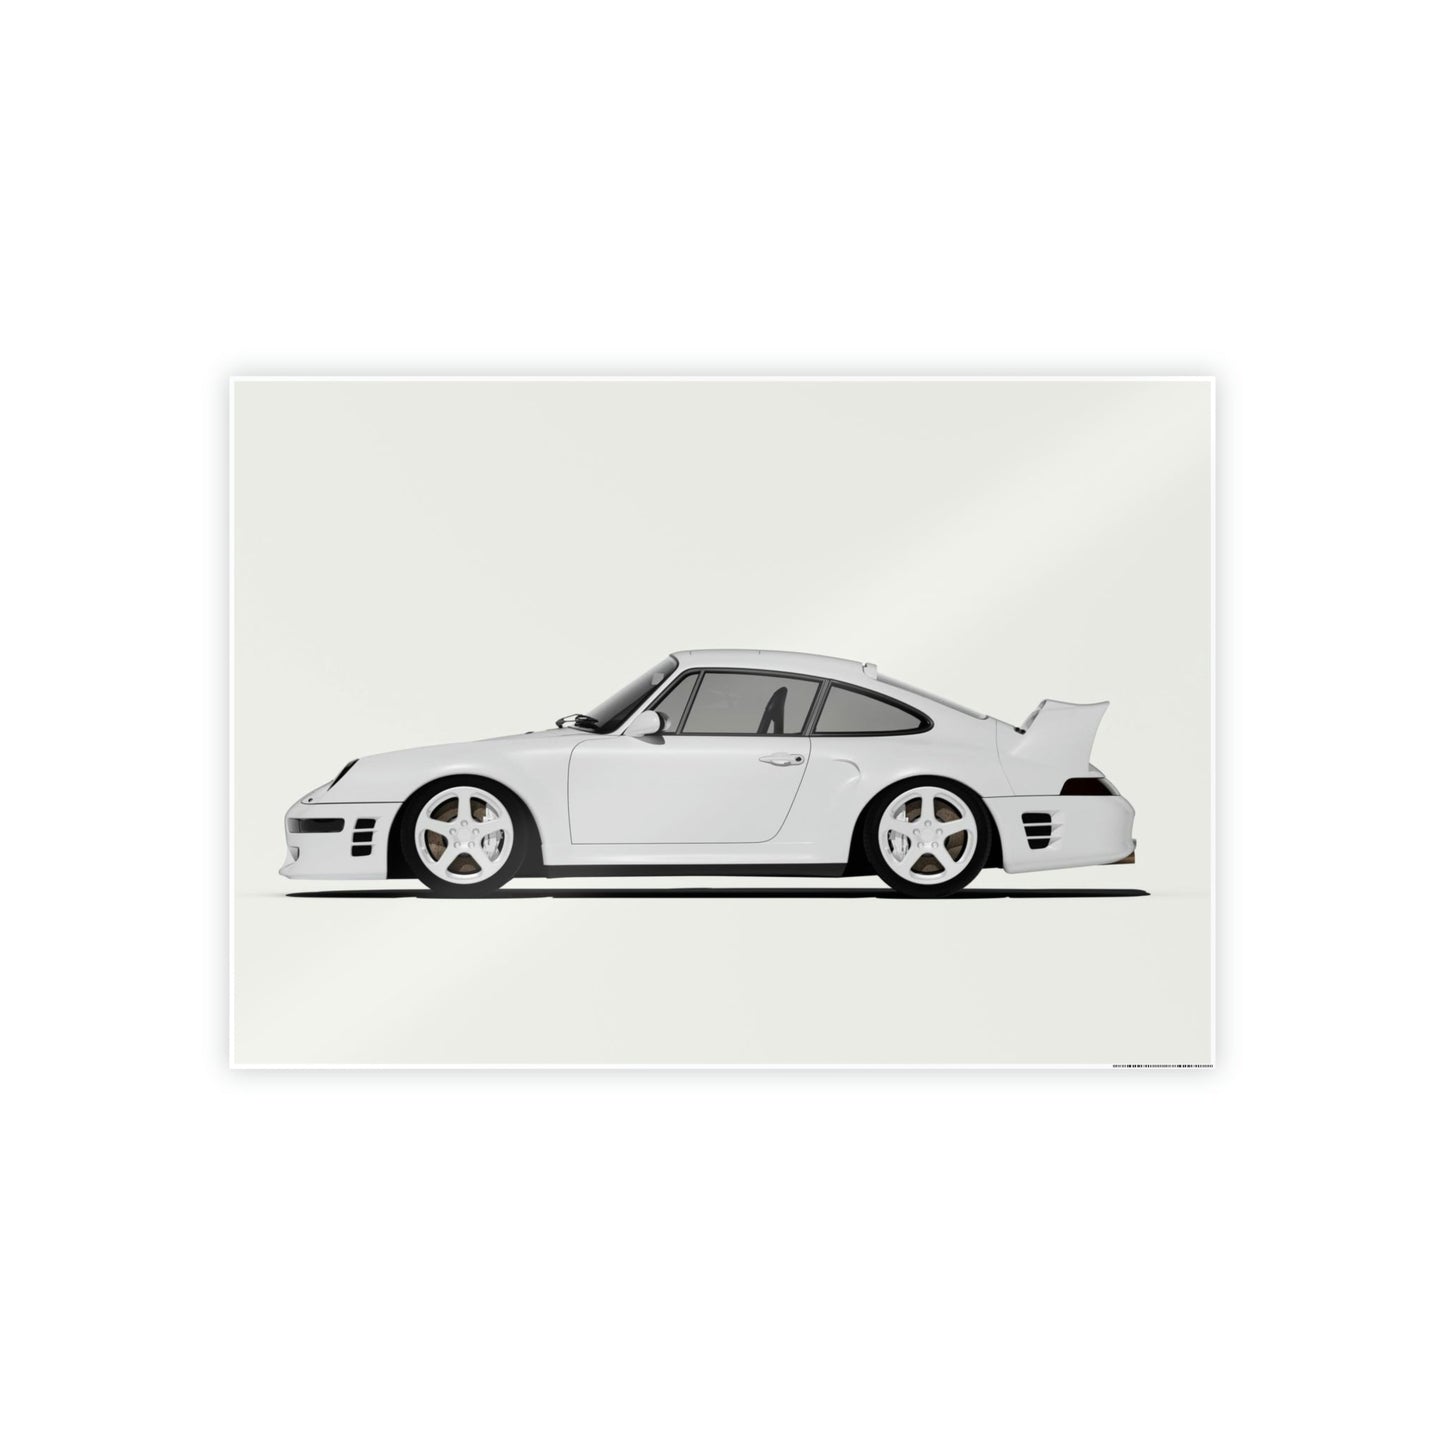 Porsche Paradise: Stunning Wall Art Featuring a Luxurious Porsche Scene on Natural Canvas